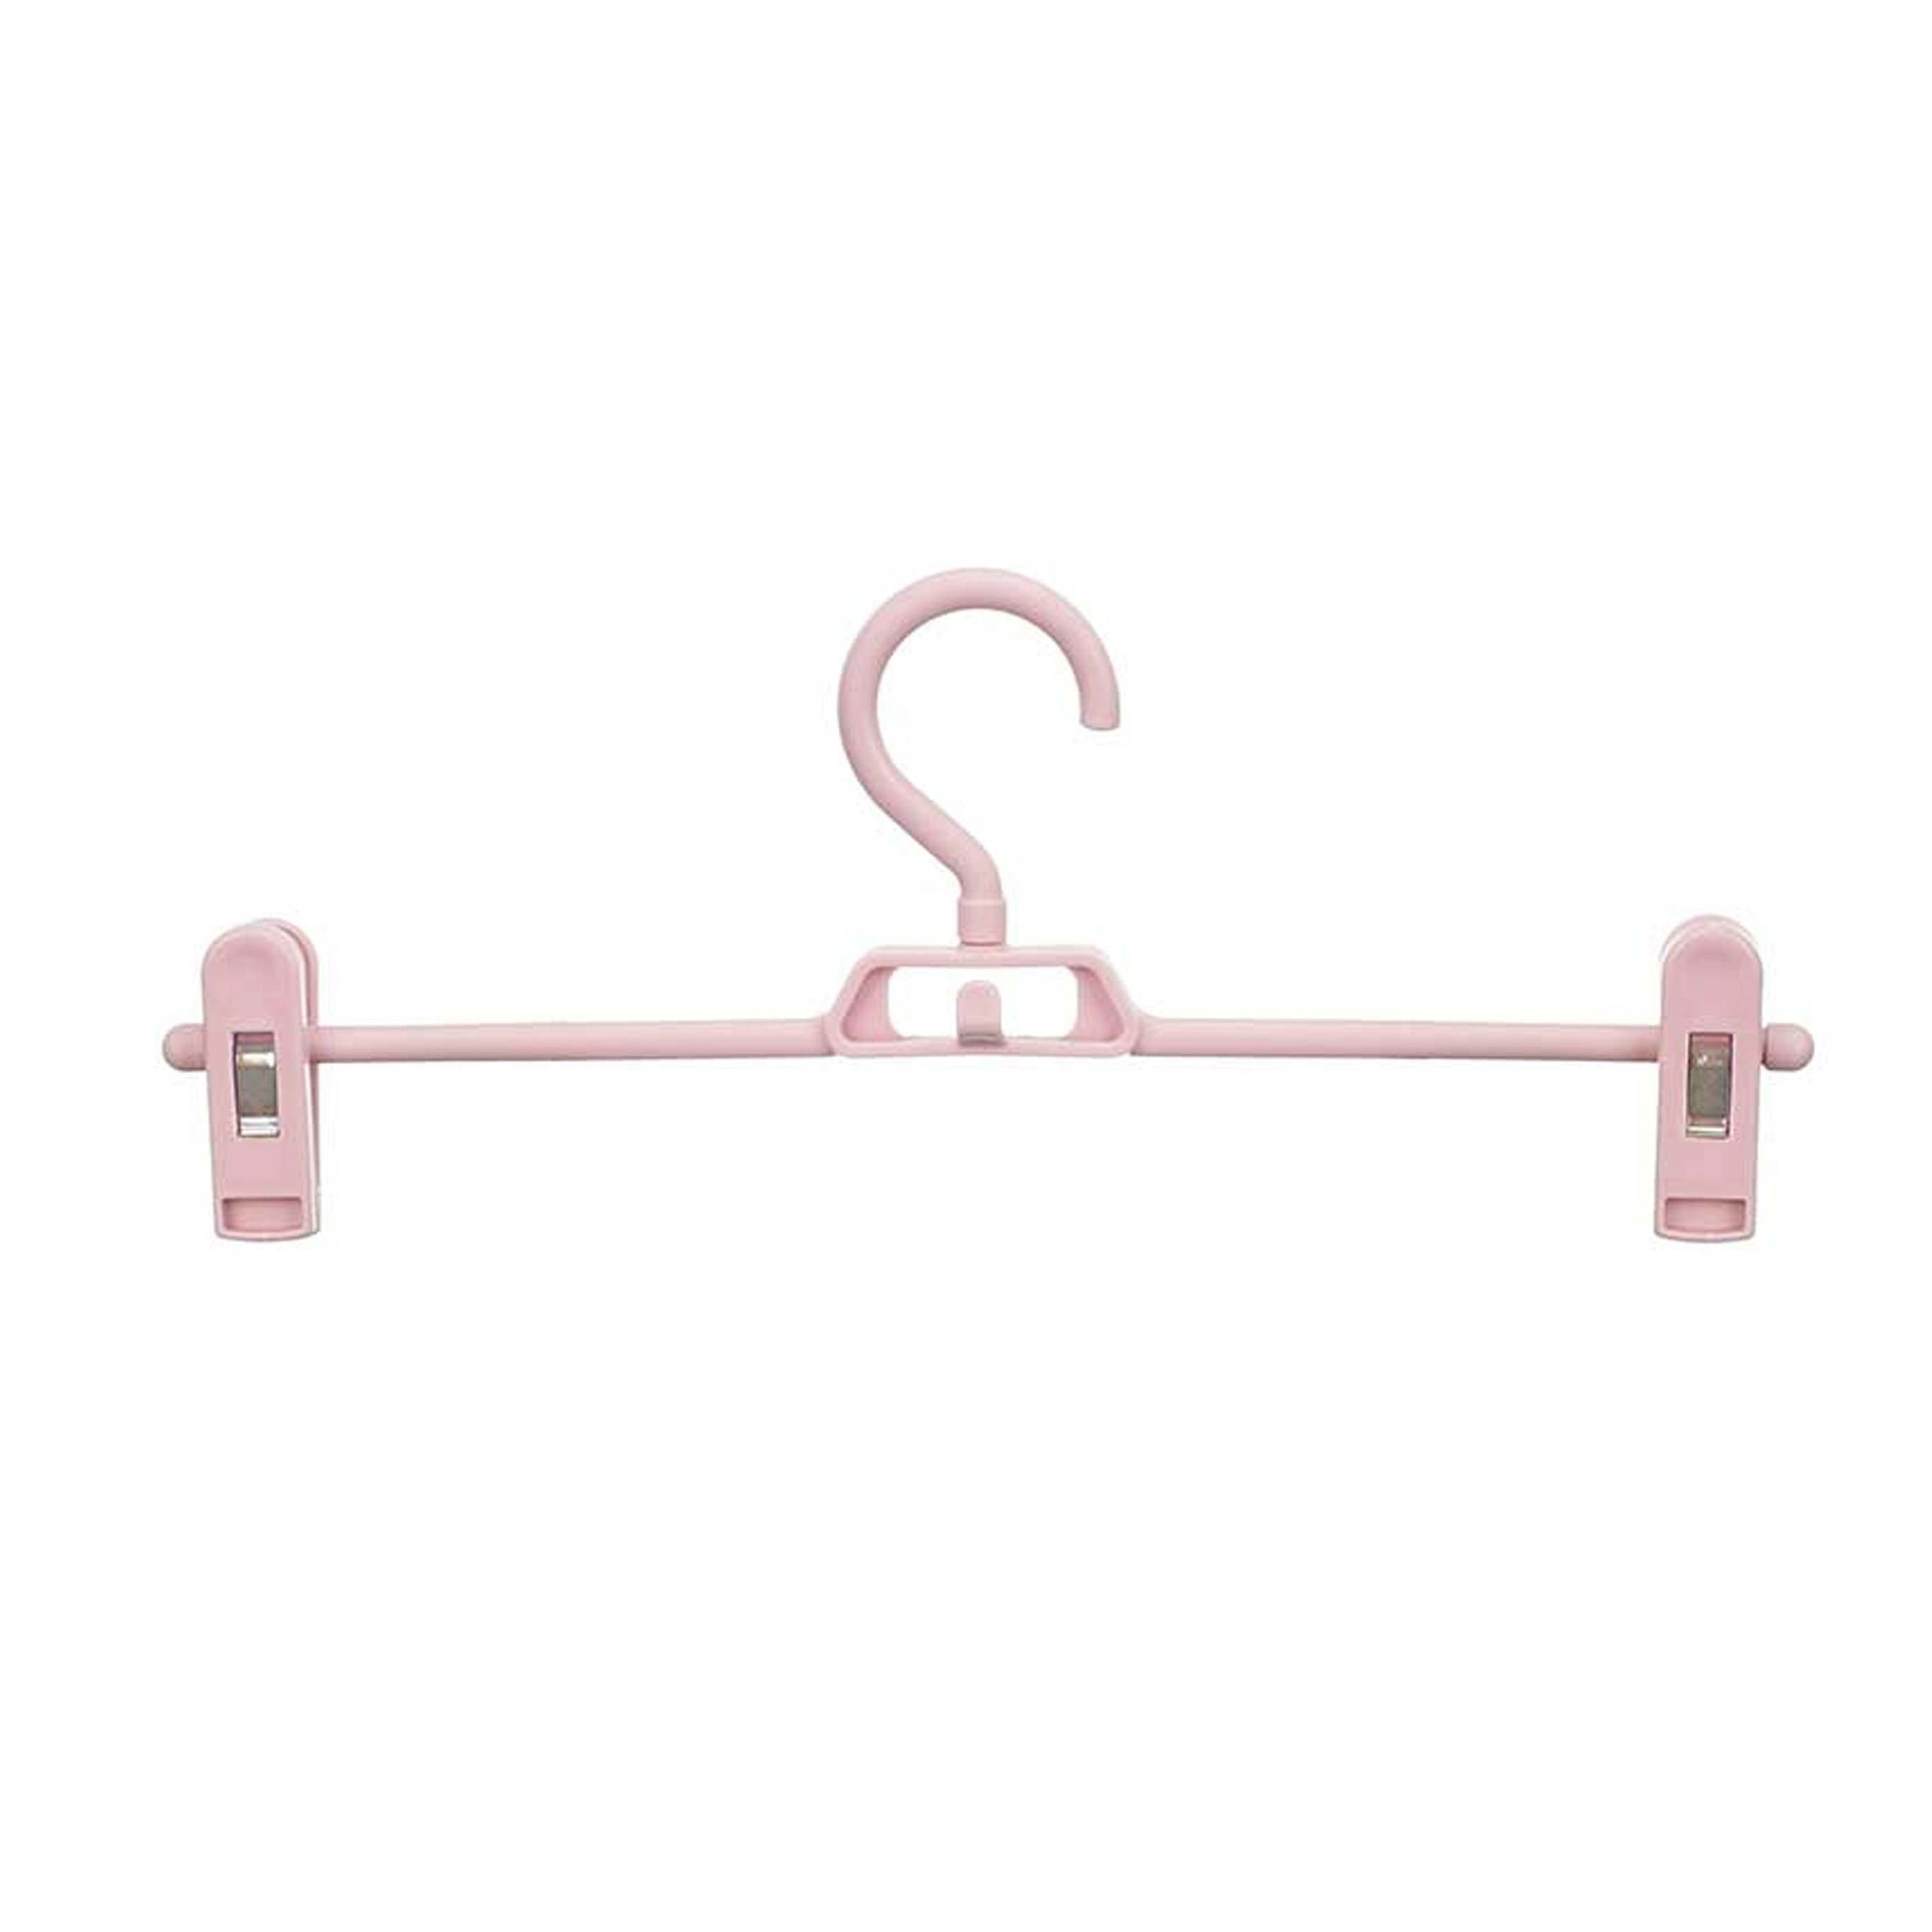 Kipit broeken-rokken kledinghangers set 4x stuks roze 32 cm